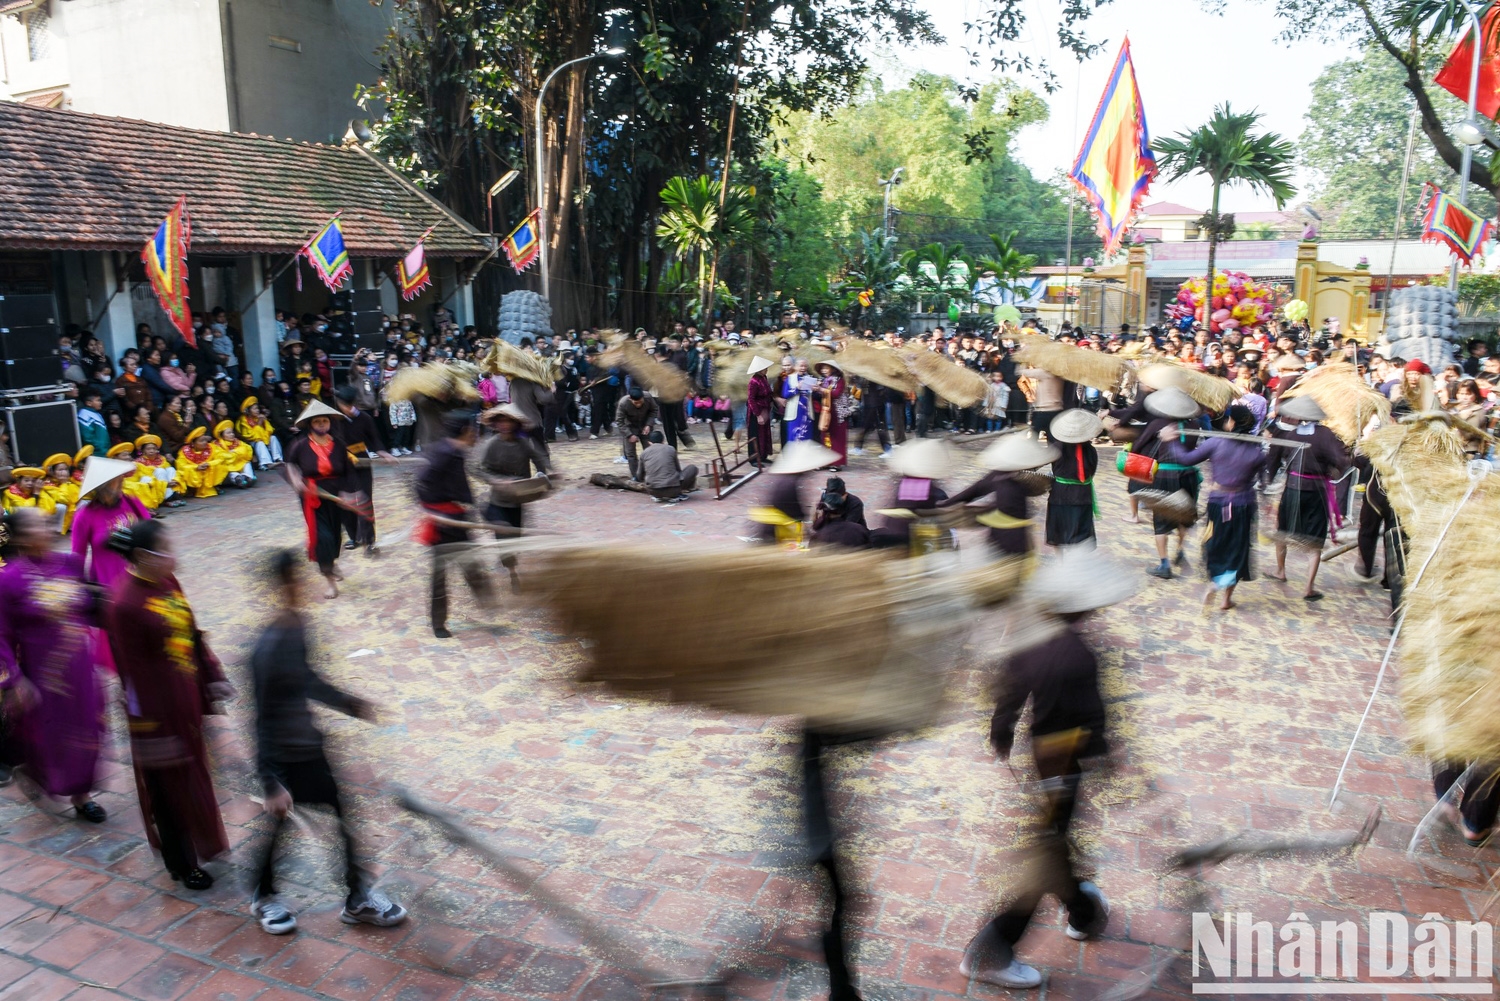 Lễ hội trâu rơm bò rạ là lễ hội đặc trưng của nền văn minh lúa nước khu vực Đồng bằng sông Hồng